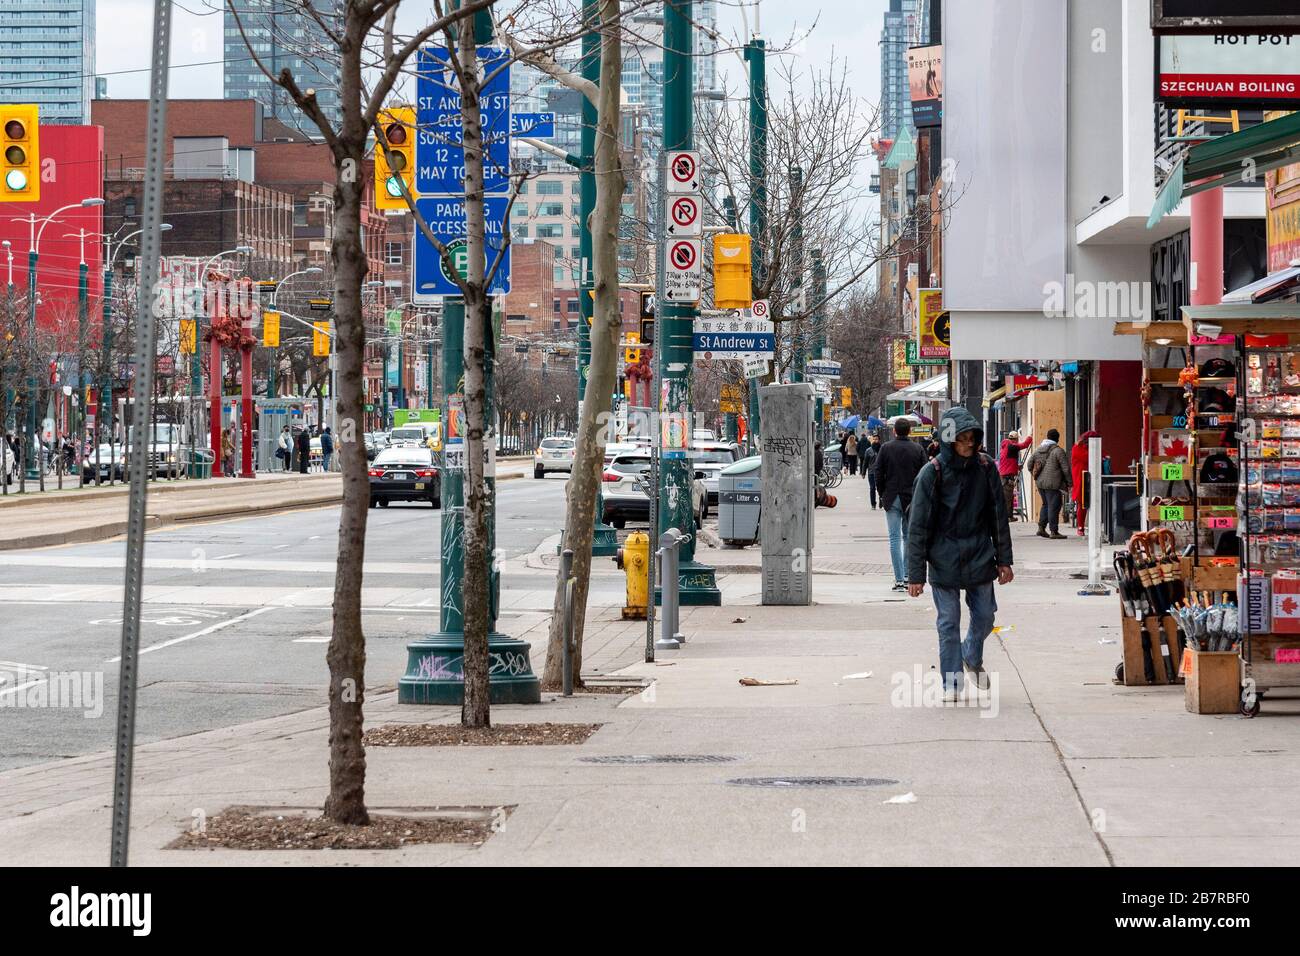 Toronto, Canadá. 17 de marzo de 2020. Una avenida normalmente ocupada Spadina en el barrio chino de Toronto está en gran parte vacía debido a muchos cierres relacionados con las medidas preventivas COVID-19 en Toronto. Dominic Chan/EXImages Foto de stock